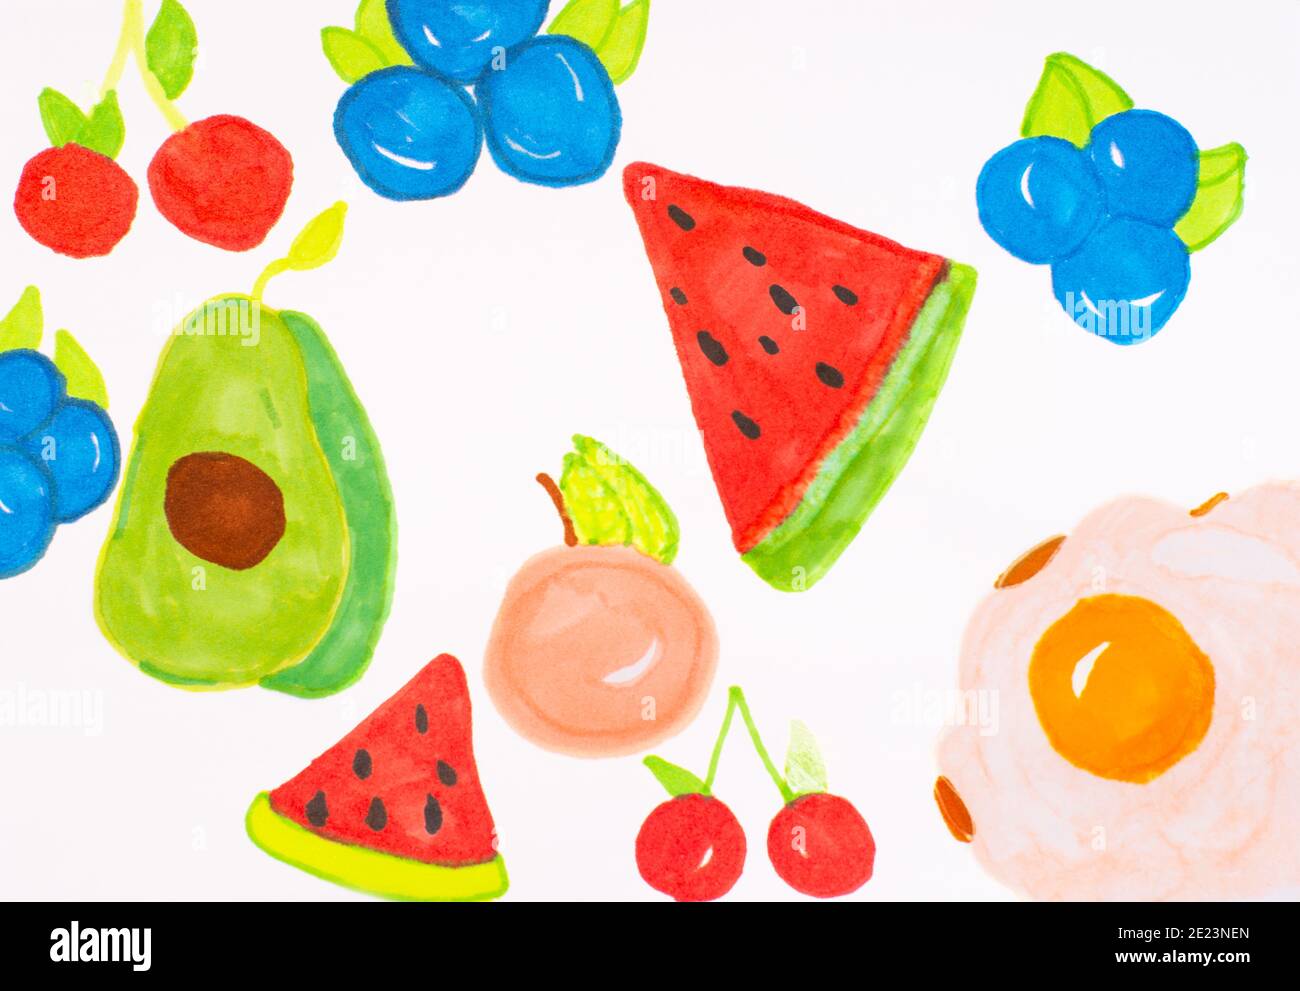 Illustration dessin d'enfant fruits contexte alimentation saine alimentation Healthy.fruits et légumes ensemble d'objets peints dessin d'enfant, dessin d'image sur pa Banque D'Images